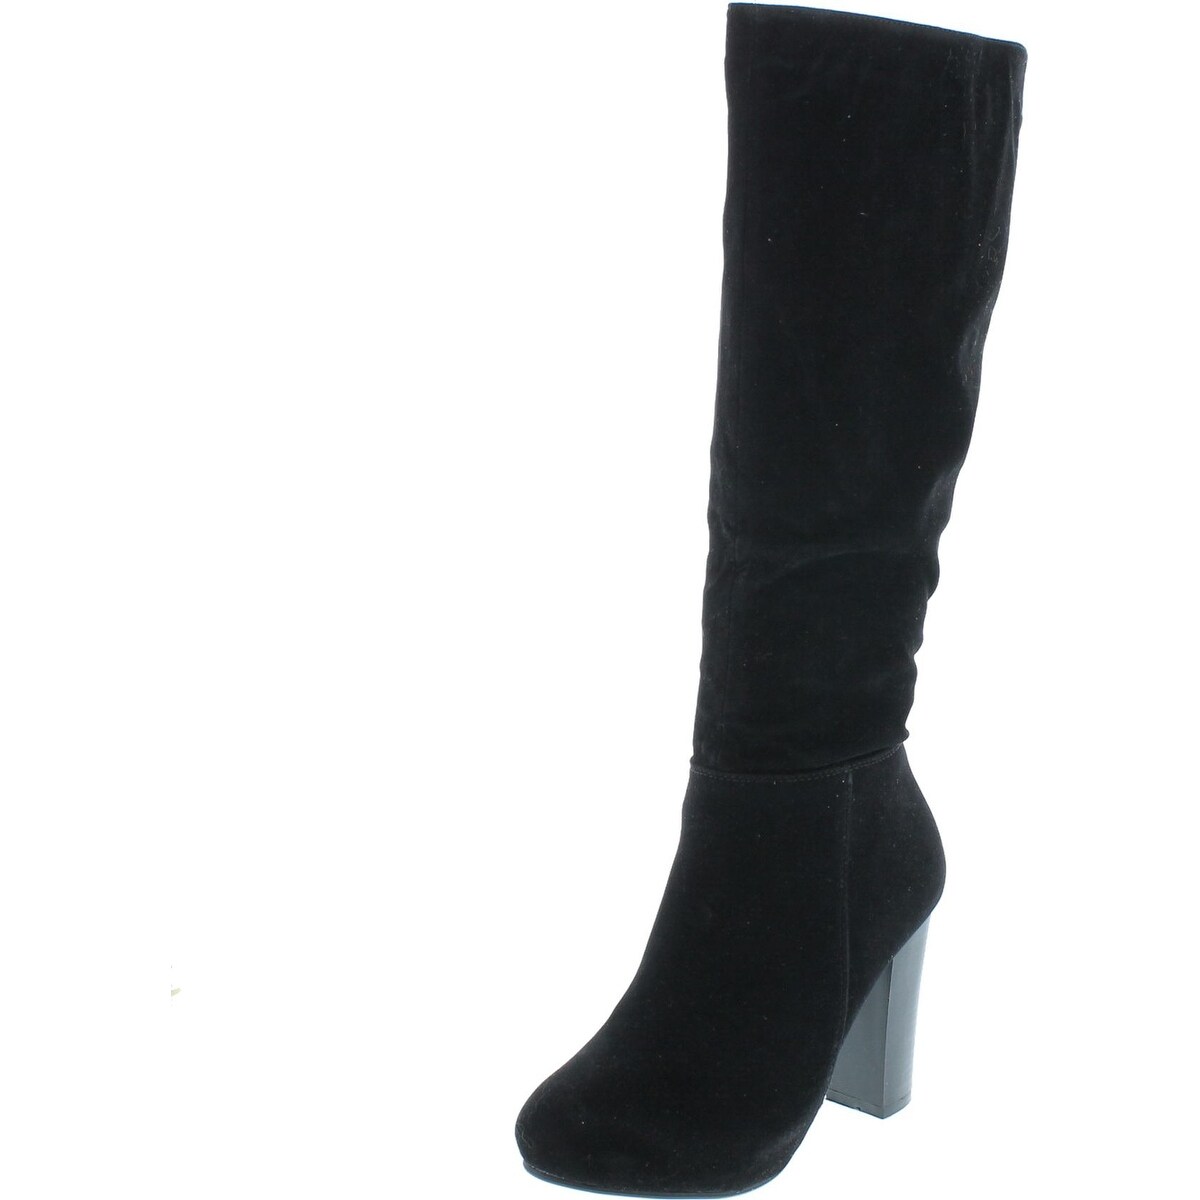 black high heel dress boots